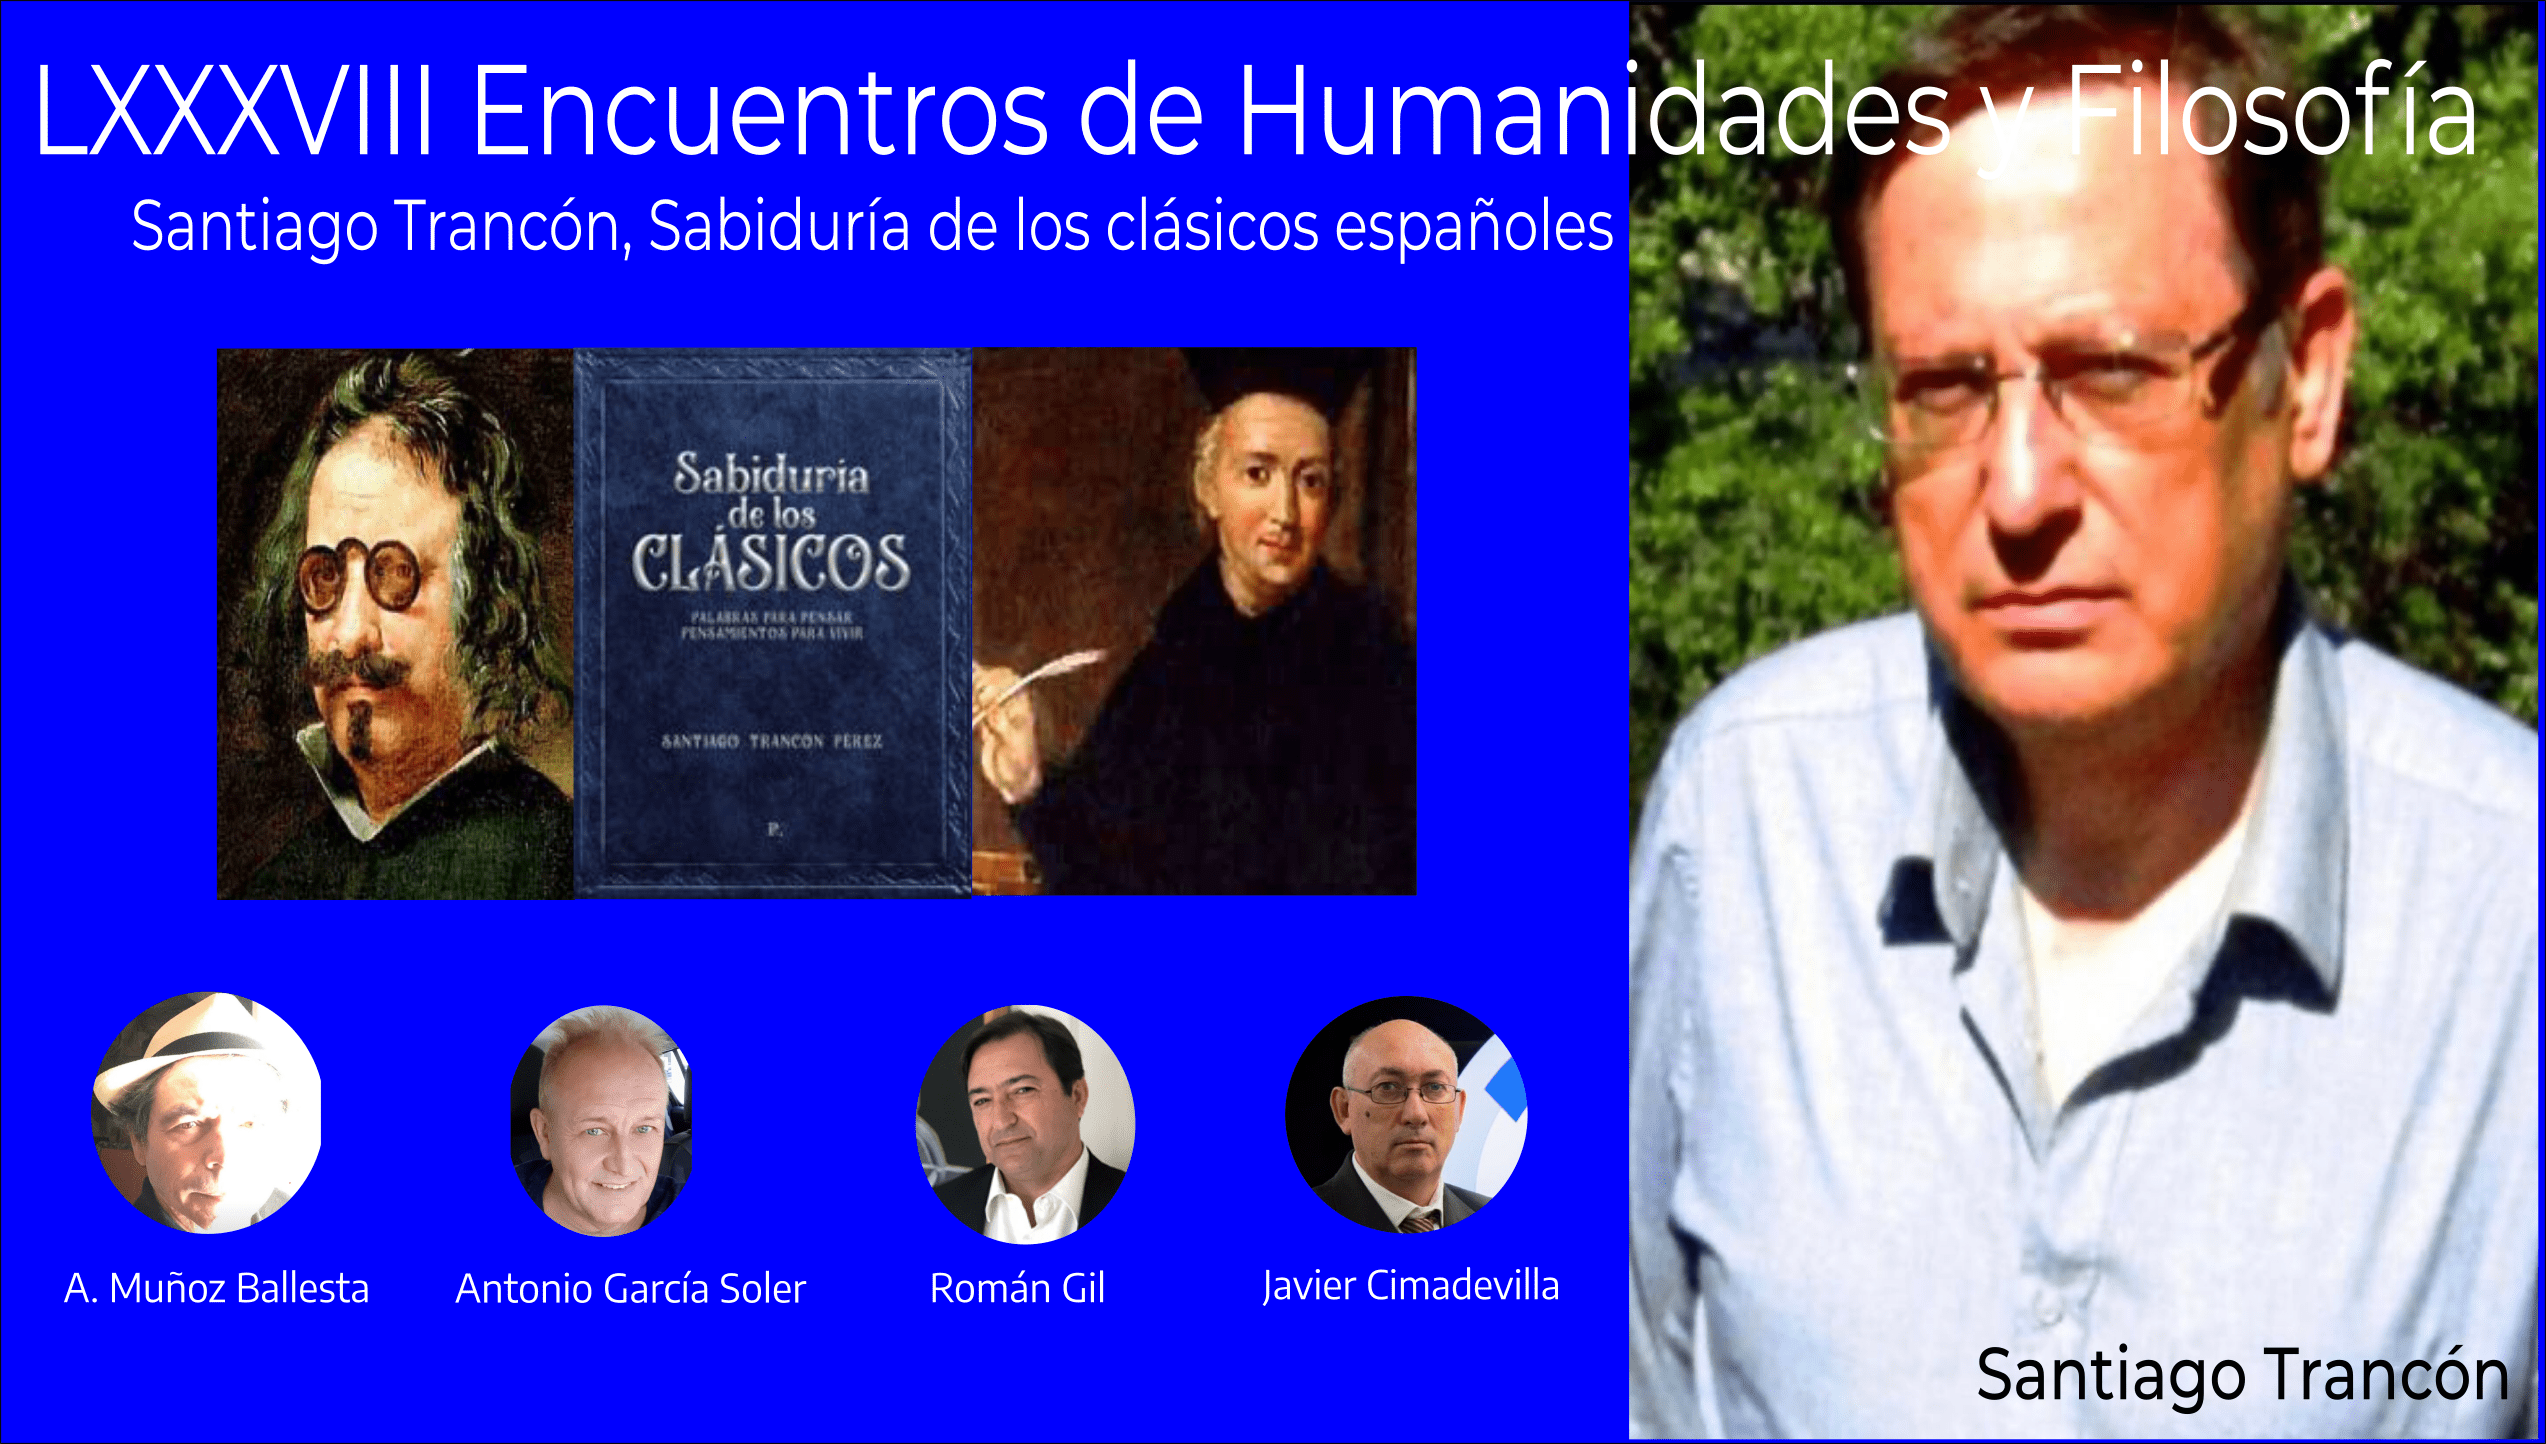  LXXXVIII Encuentros Humanidades y Filosofía, Santiago Trancón, la sabiduría de los clásicos